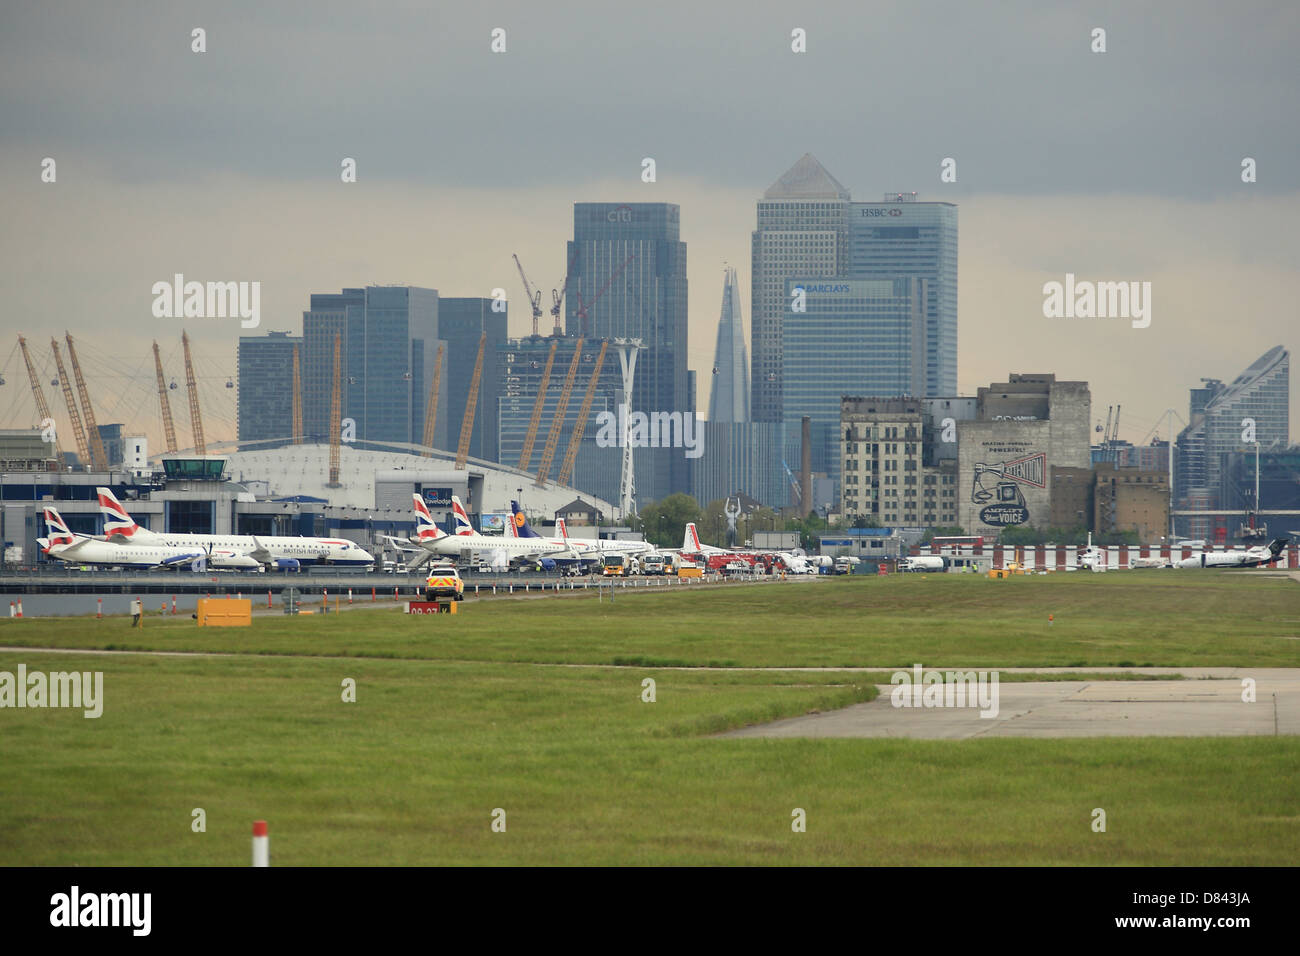 Ansicht von London City Airport mit dem Hintergrund des Canary Wharf und der o2 Arena. Stockfoto